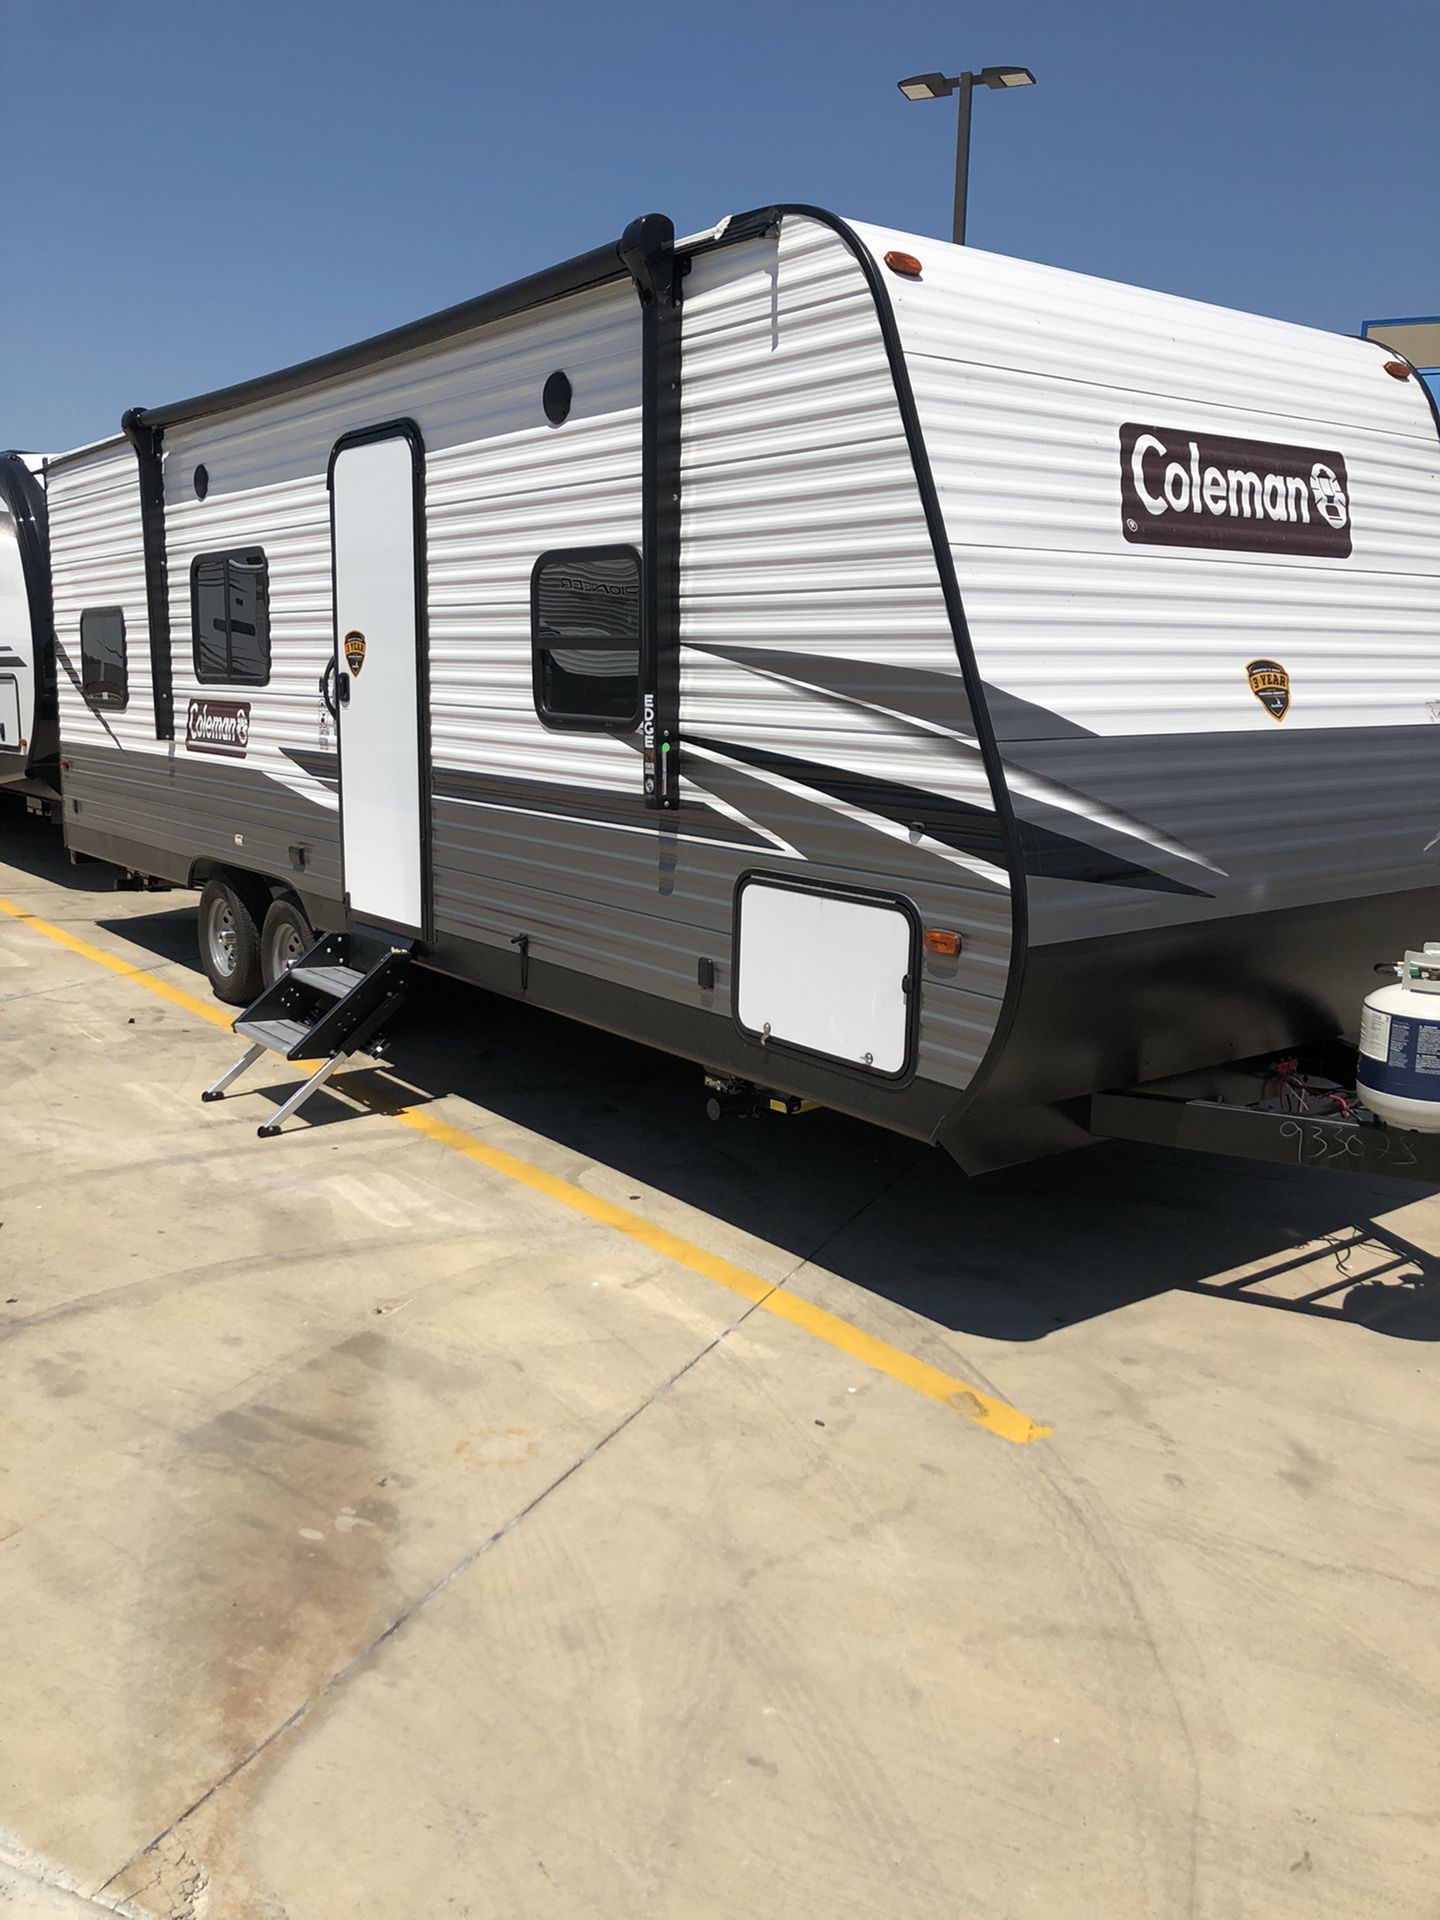 Travel trailer camper